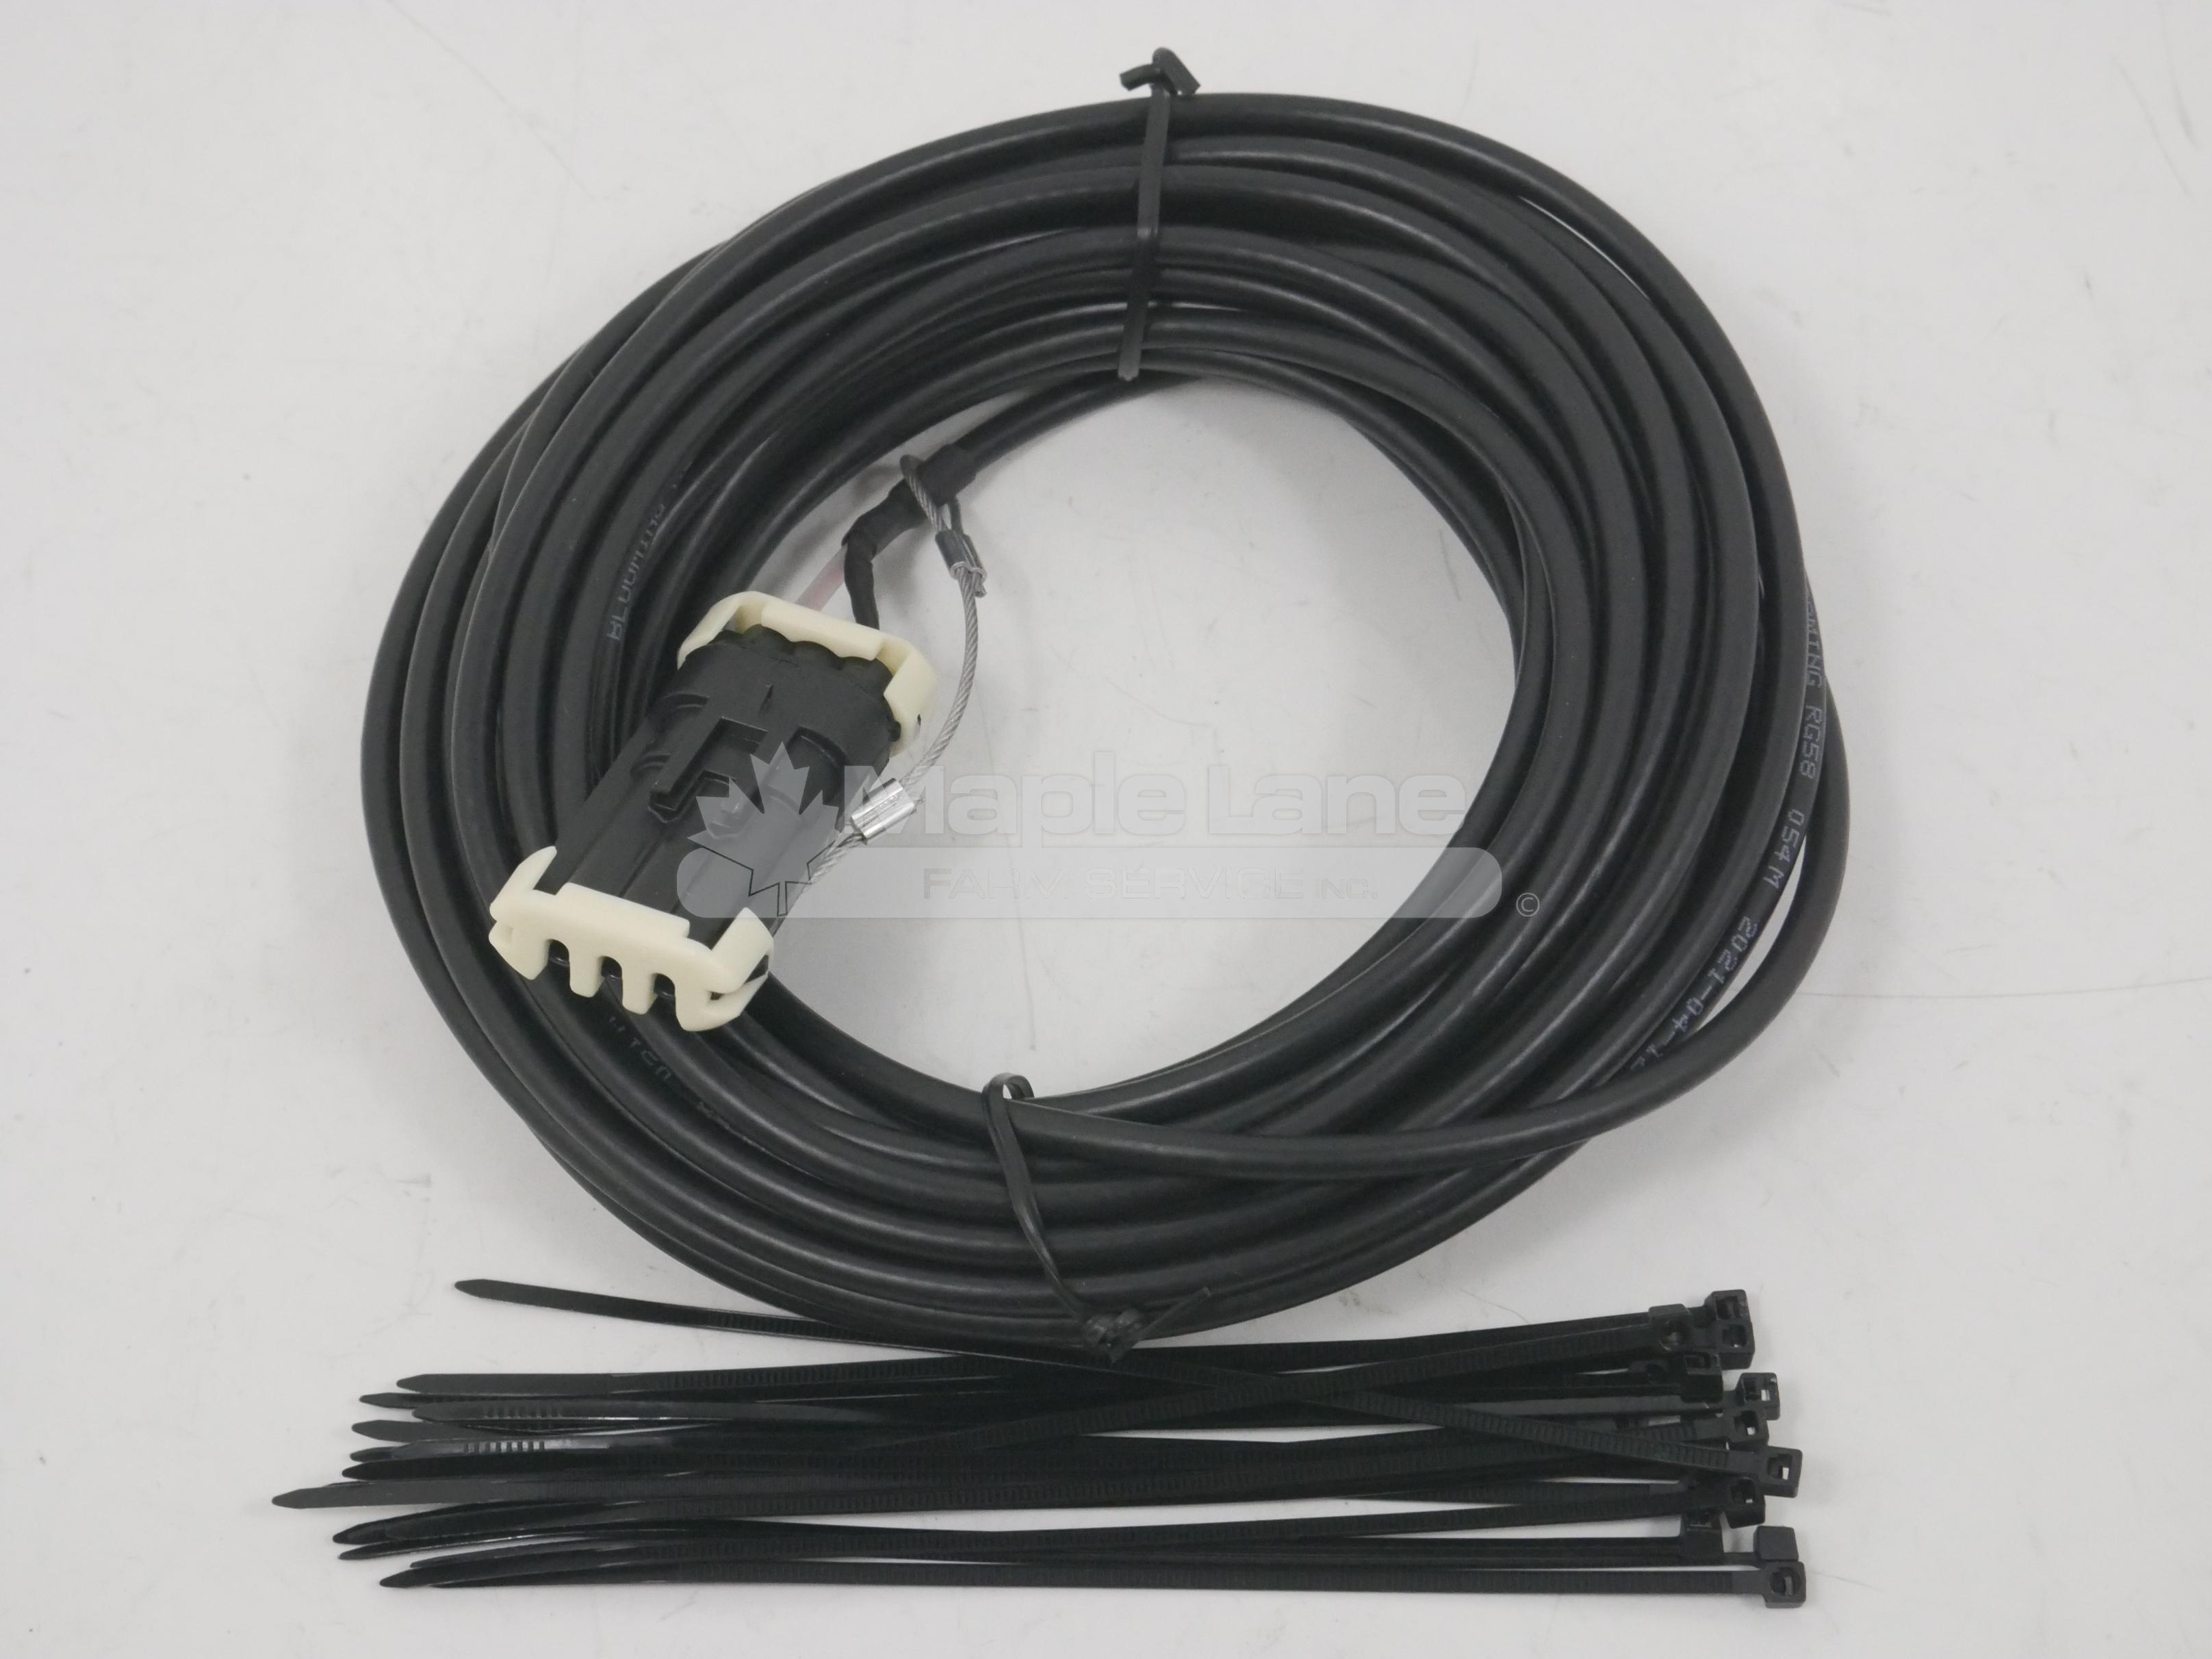 FX06064 Sensor Cable